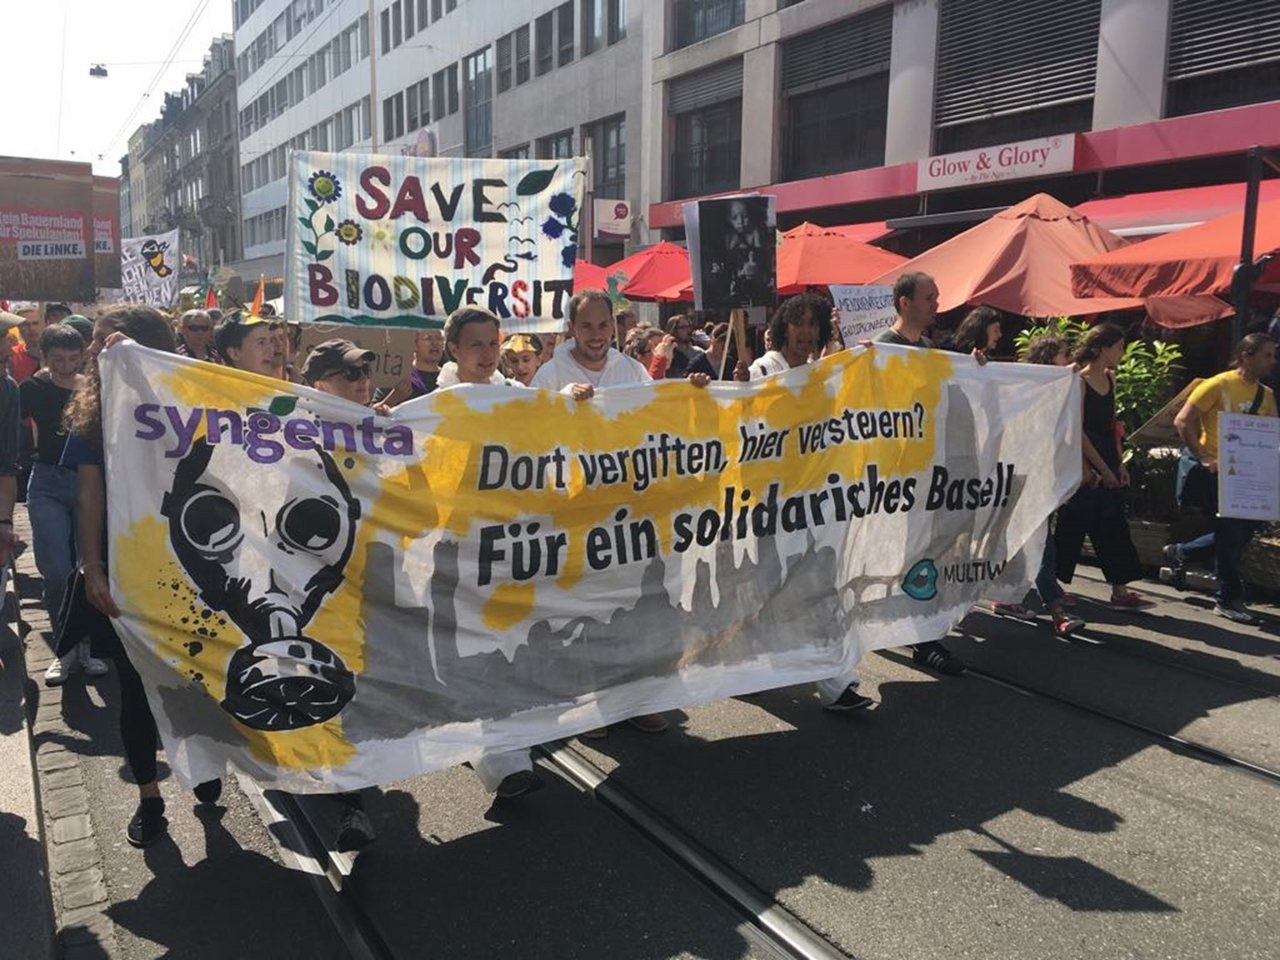 Die bewilligte Demonstration fand zum fünften Mal in Basel statt. (Bild Public Eye/Twitter)